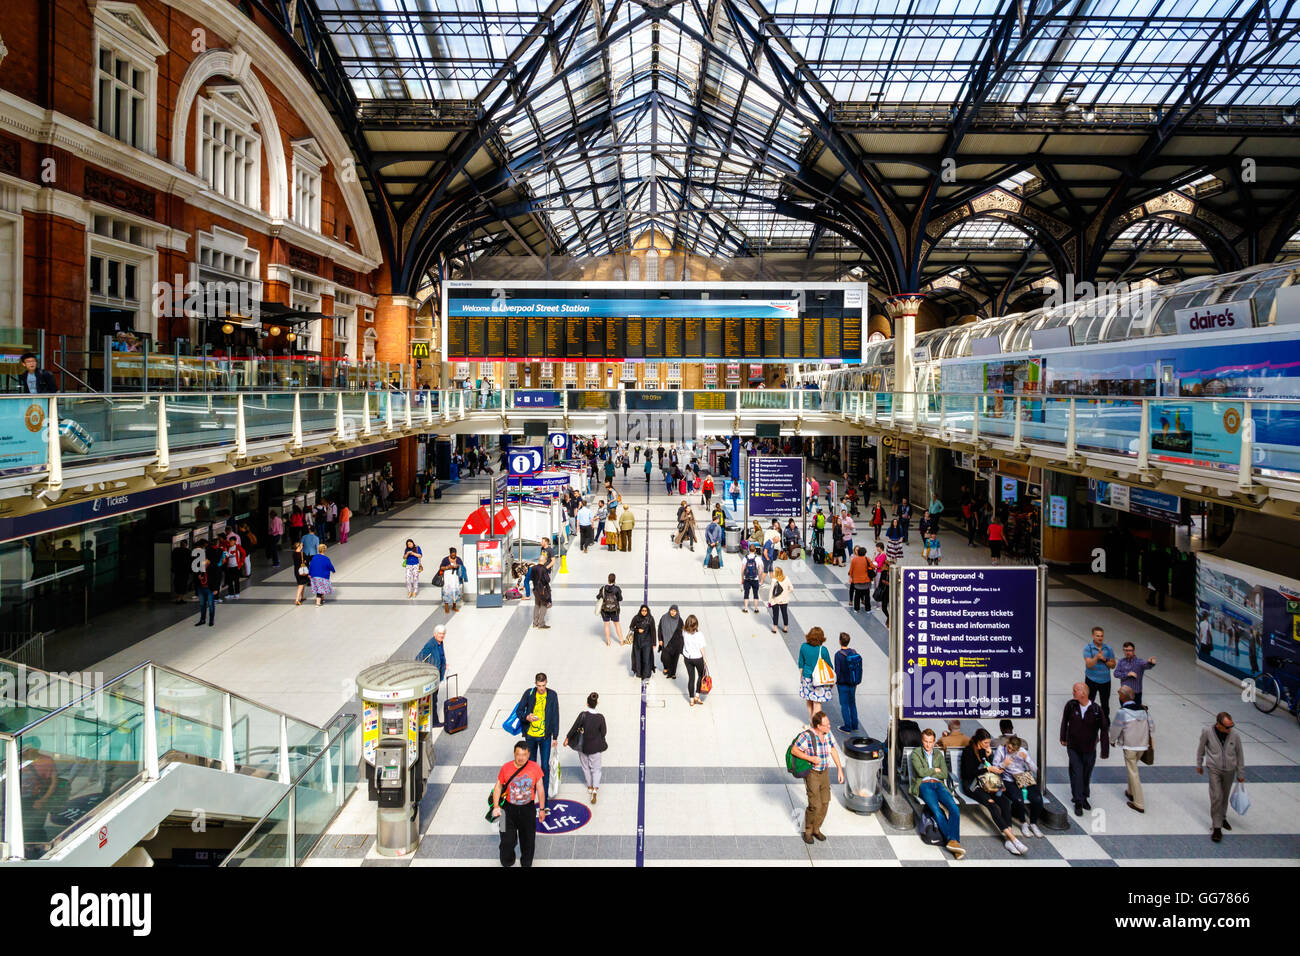 Londres, Royaume-Uni - 25 juin 2016 - promenade à travers les navetteurs de la gare de Liverpool Street Banque D'Images